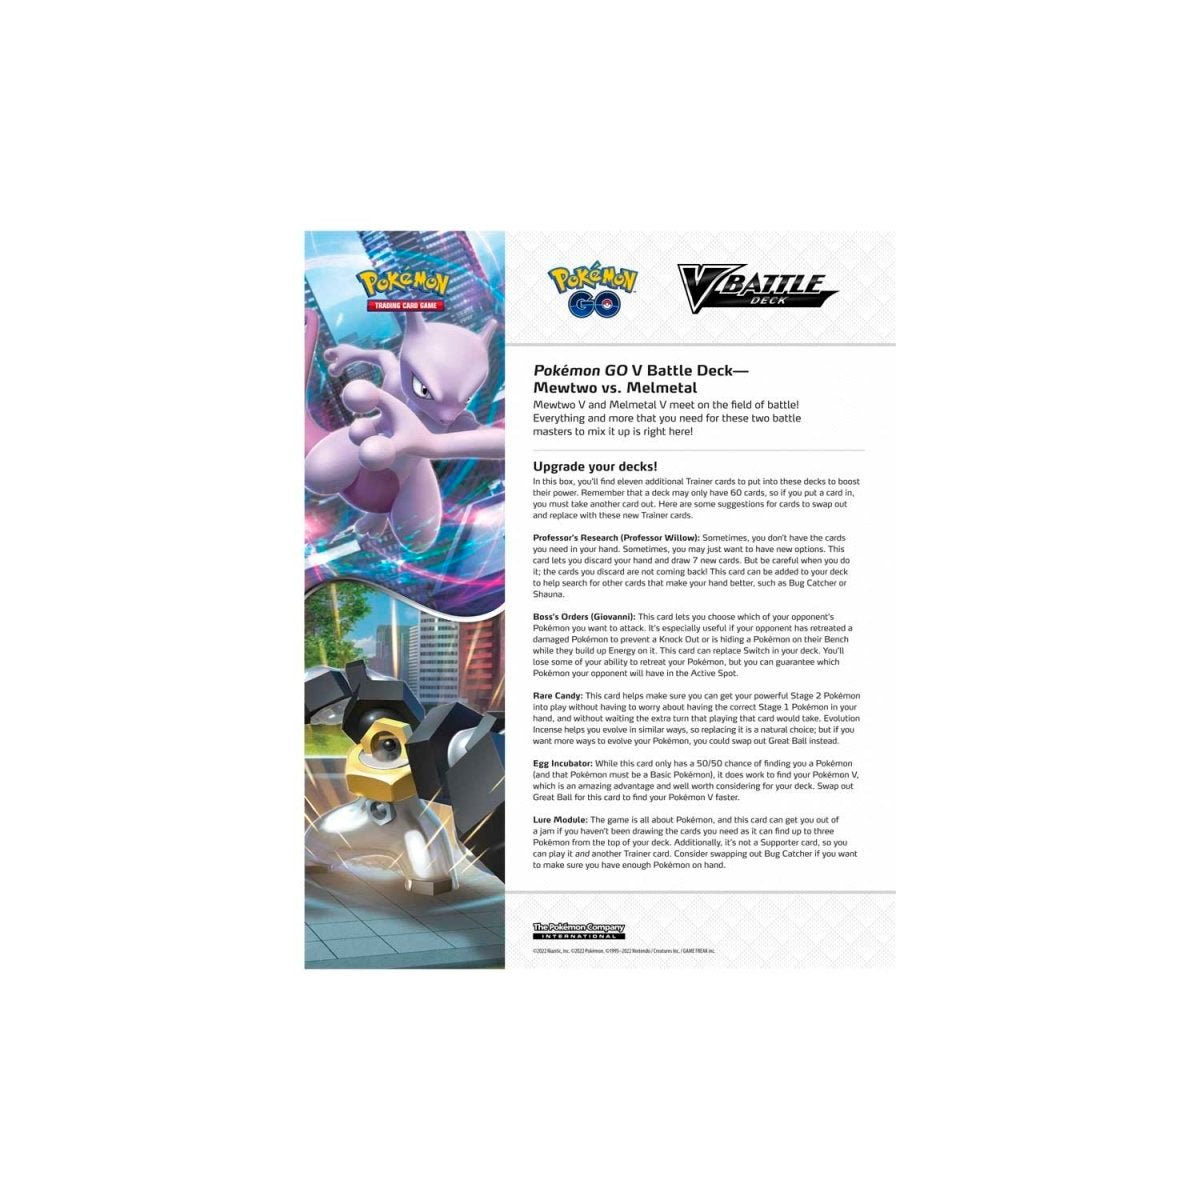 Pokémon TCG: Pokémon GO Mewtwo vs. Melmetal V Battle Deck - PokeRvmTheme Deck